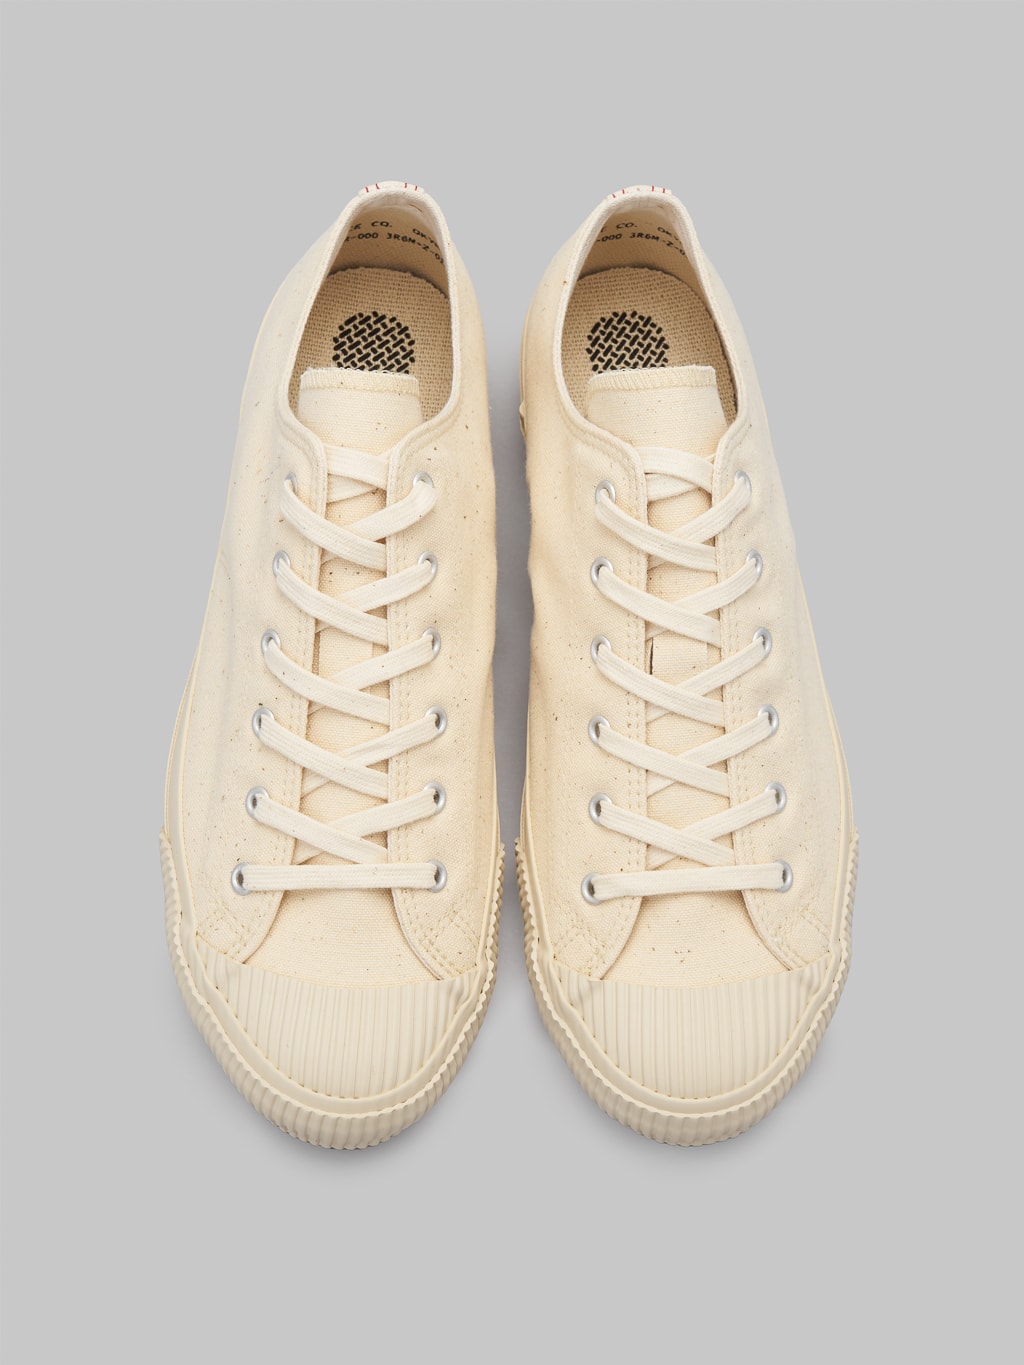 Pras Shellcap Low Sneakers Kinari off white craftsmanship